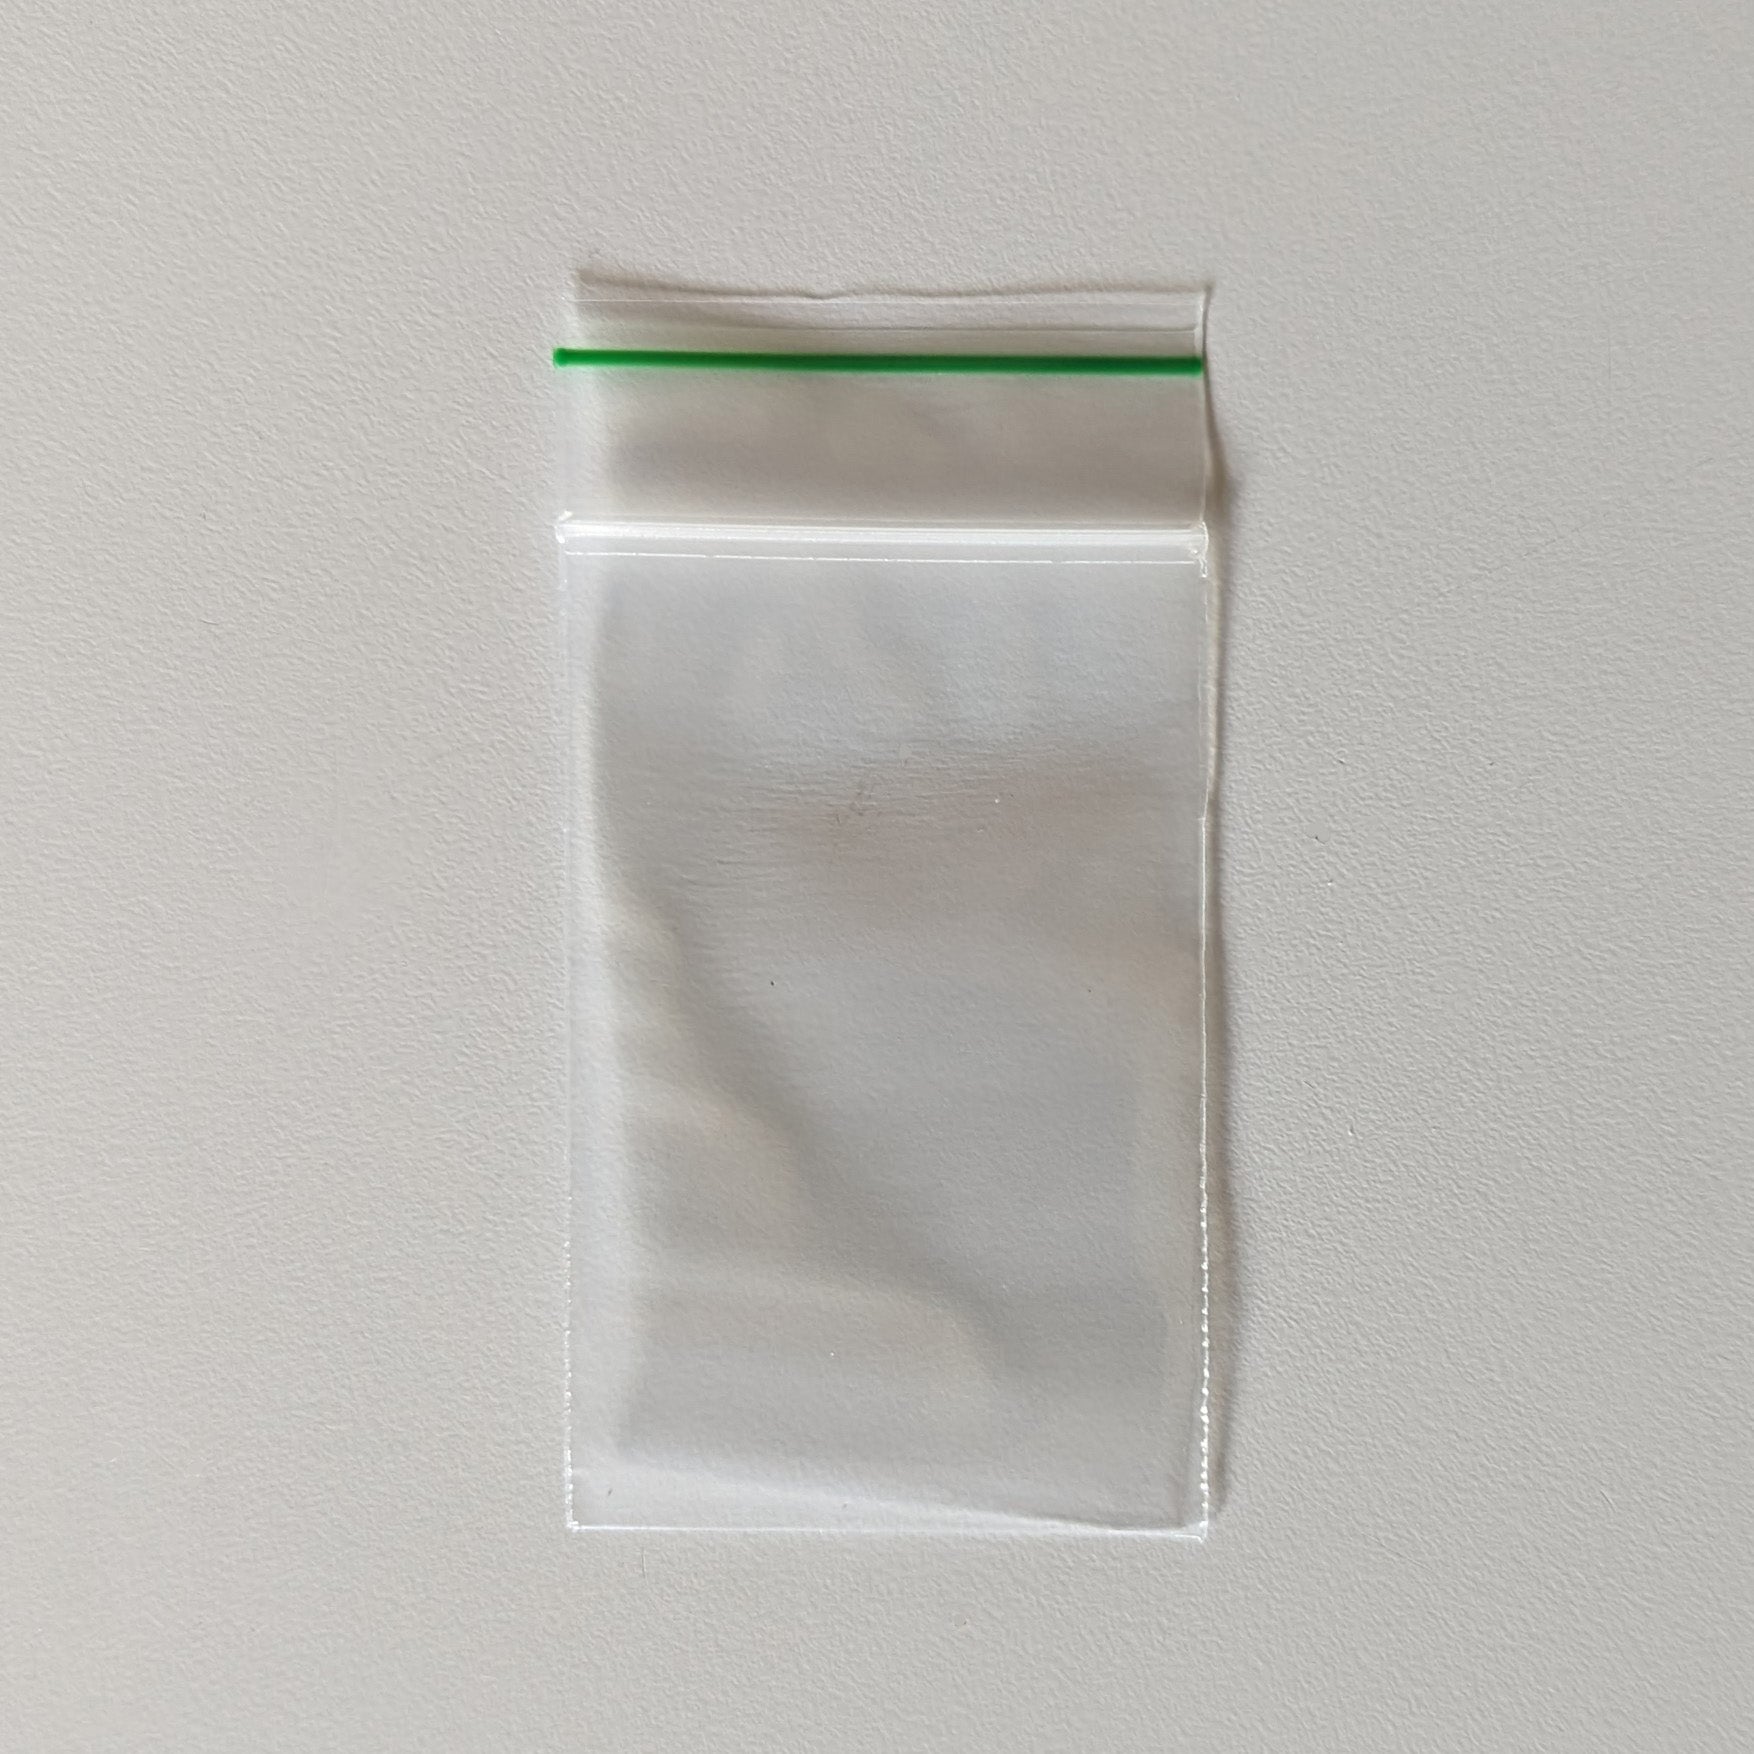 Plastic Mini Ziplock Bags 2 x 2